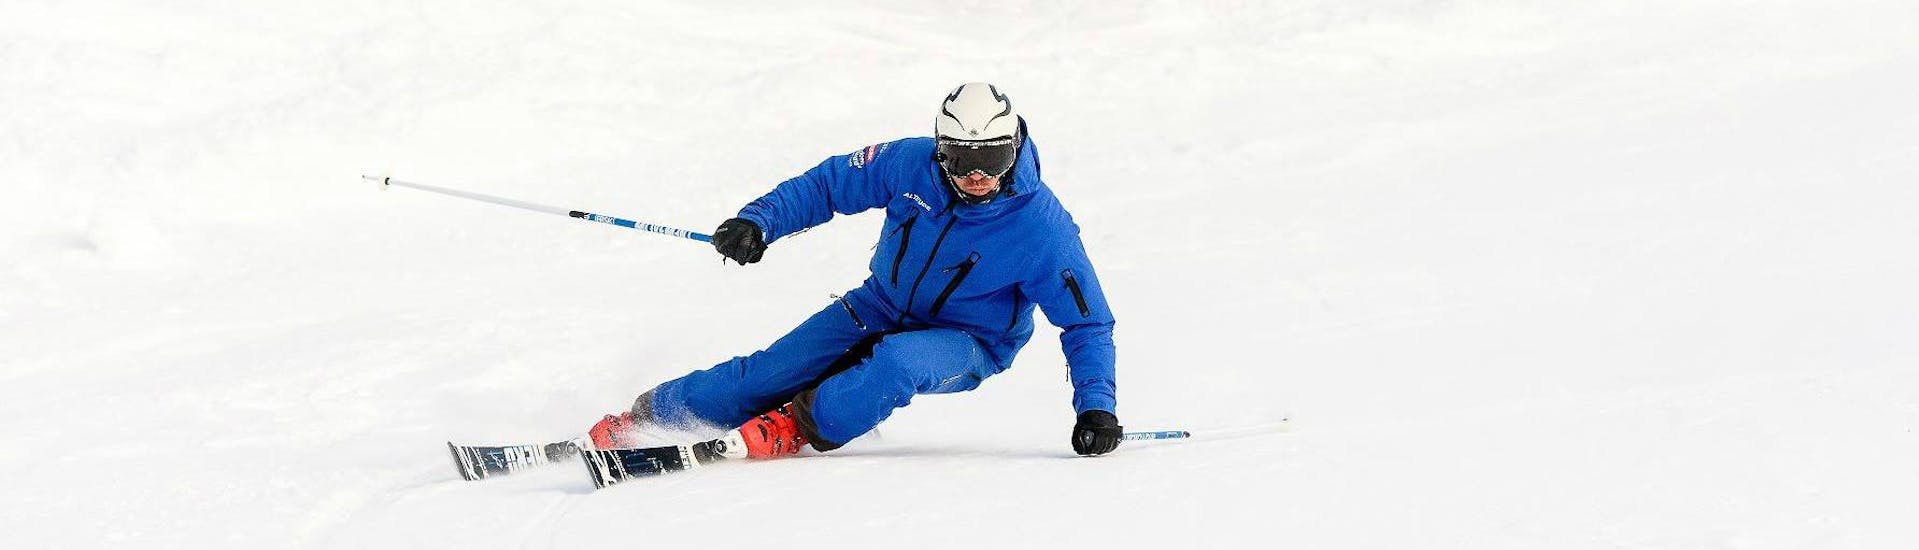 Tijdens de privéskilessen voor volwassenen - alle niveaus bij Altitude Ski School Zermatt, demonstreert een skileraar de juiste carvingtechniek.